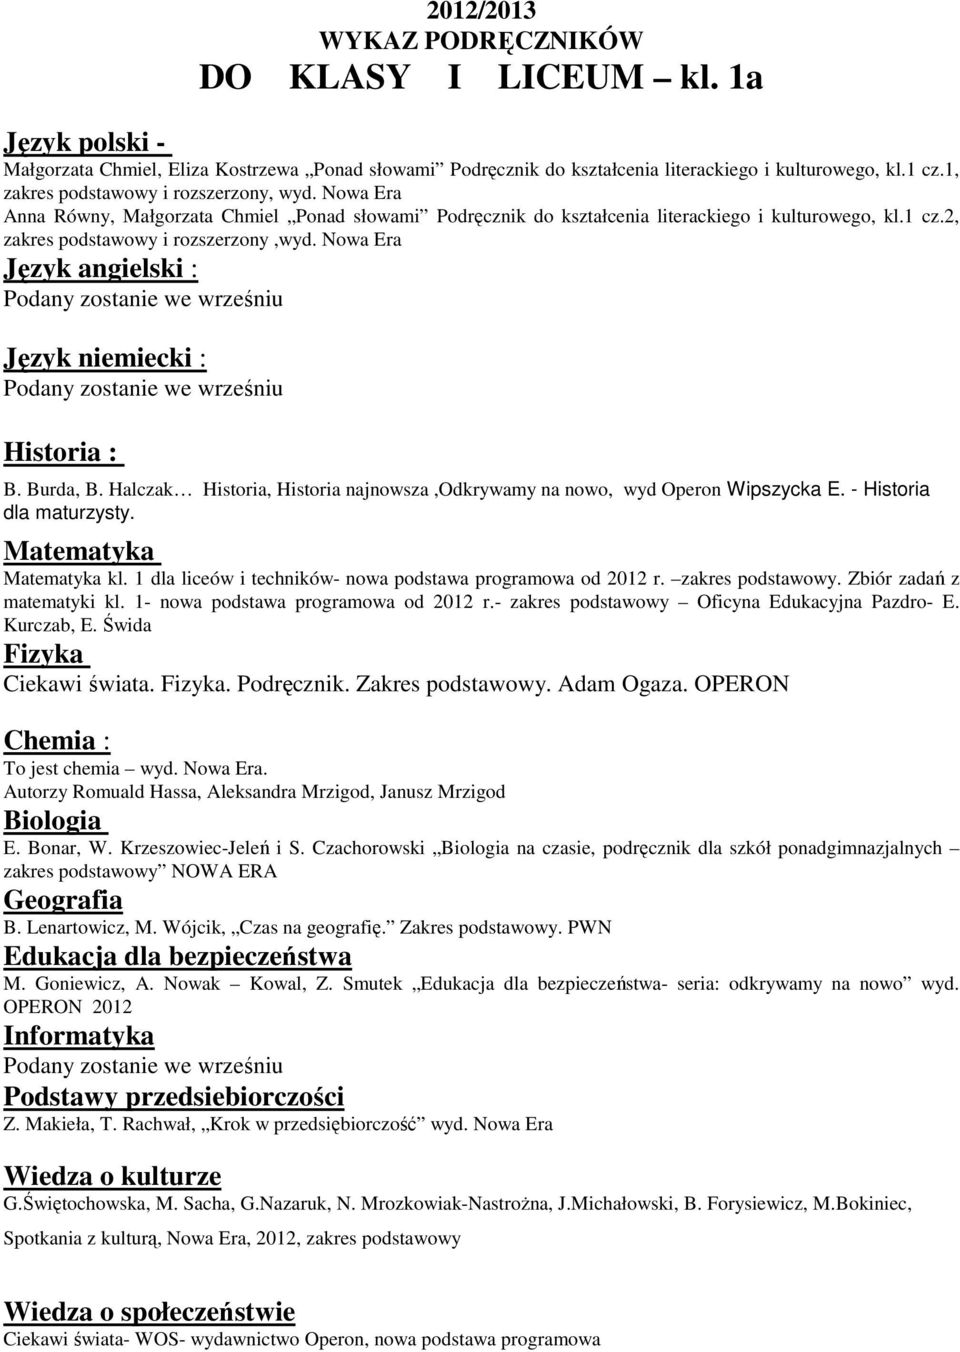 Halczak Historia, Historia najnowsza,odkrywamy na nowo, wyd Operon Wipszycka E. - Historia dla maturzysty. kl. 1 dla liceów i techników- nowa podstawa programowa od 2012 r. zakres podstawowy.